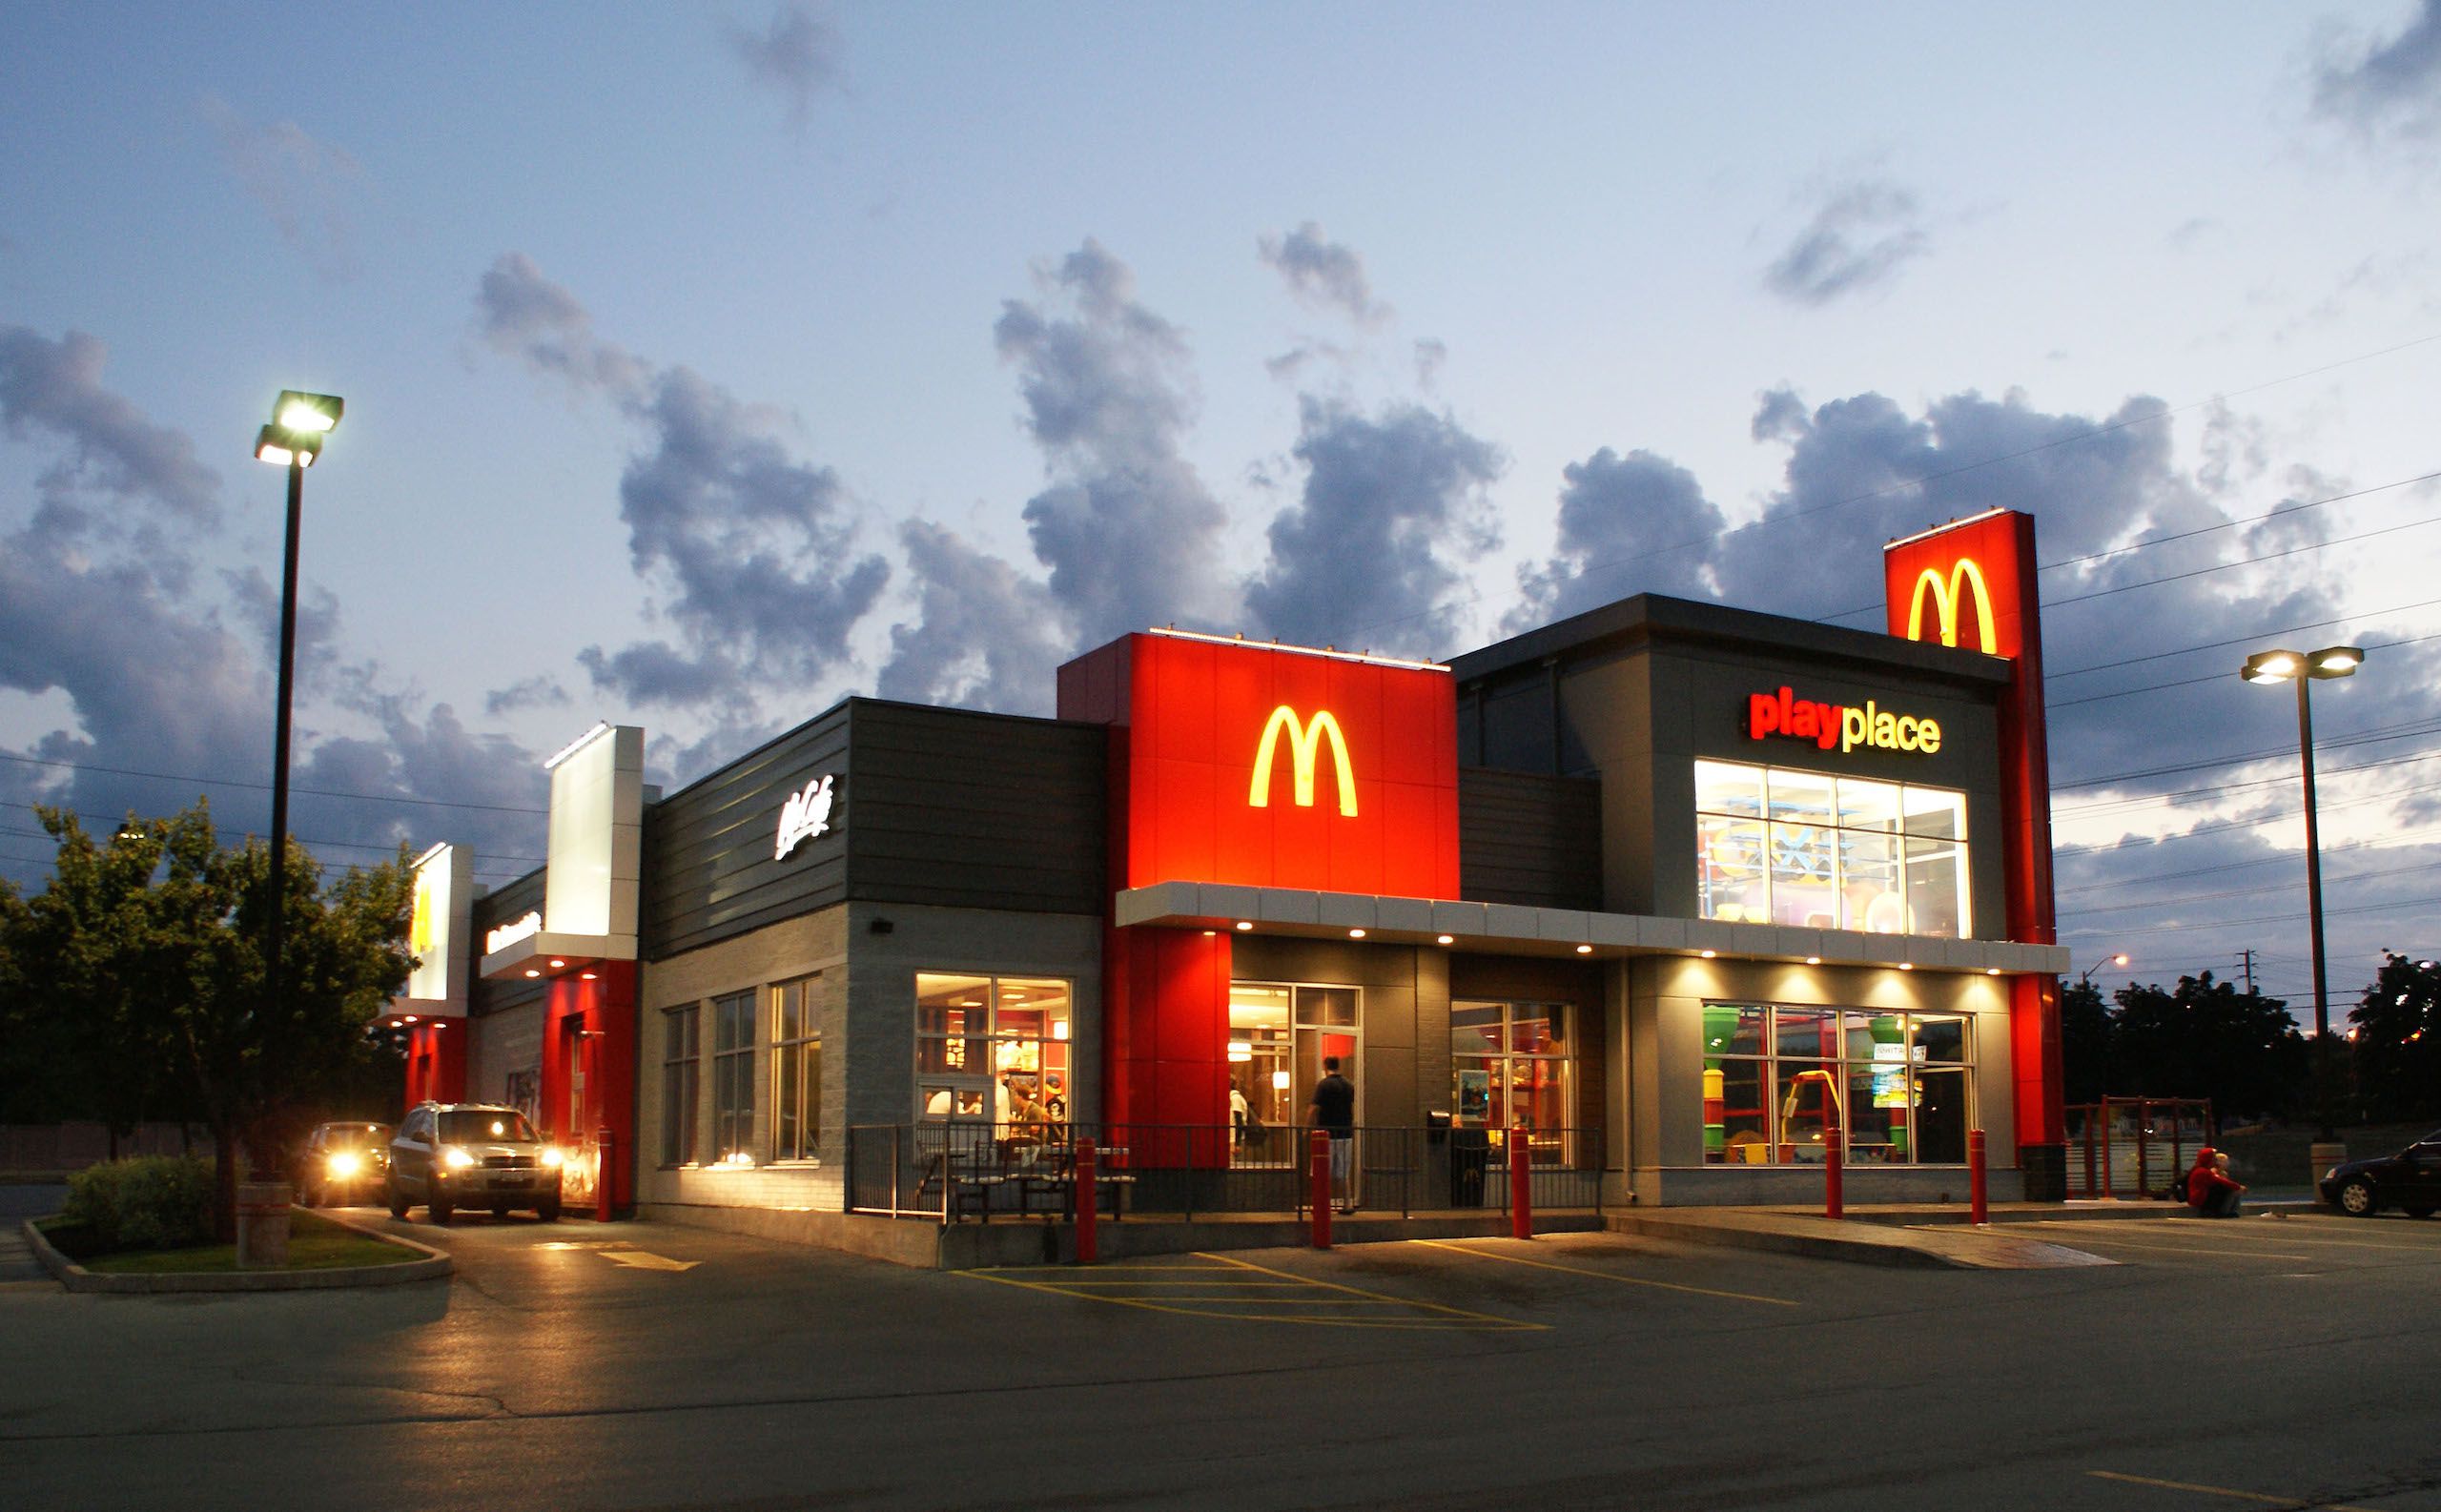 McDonald’s: Your Favorite Quick Meal Destination!